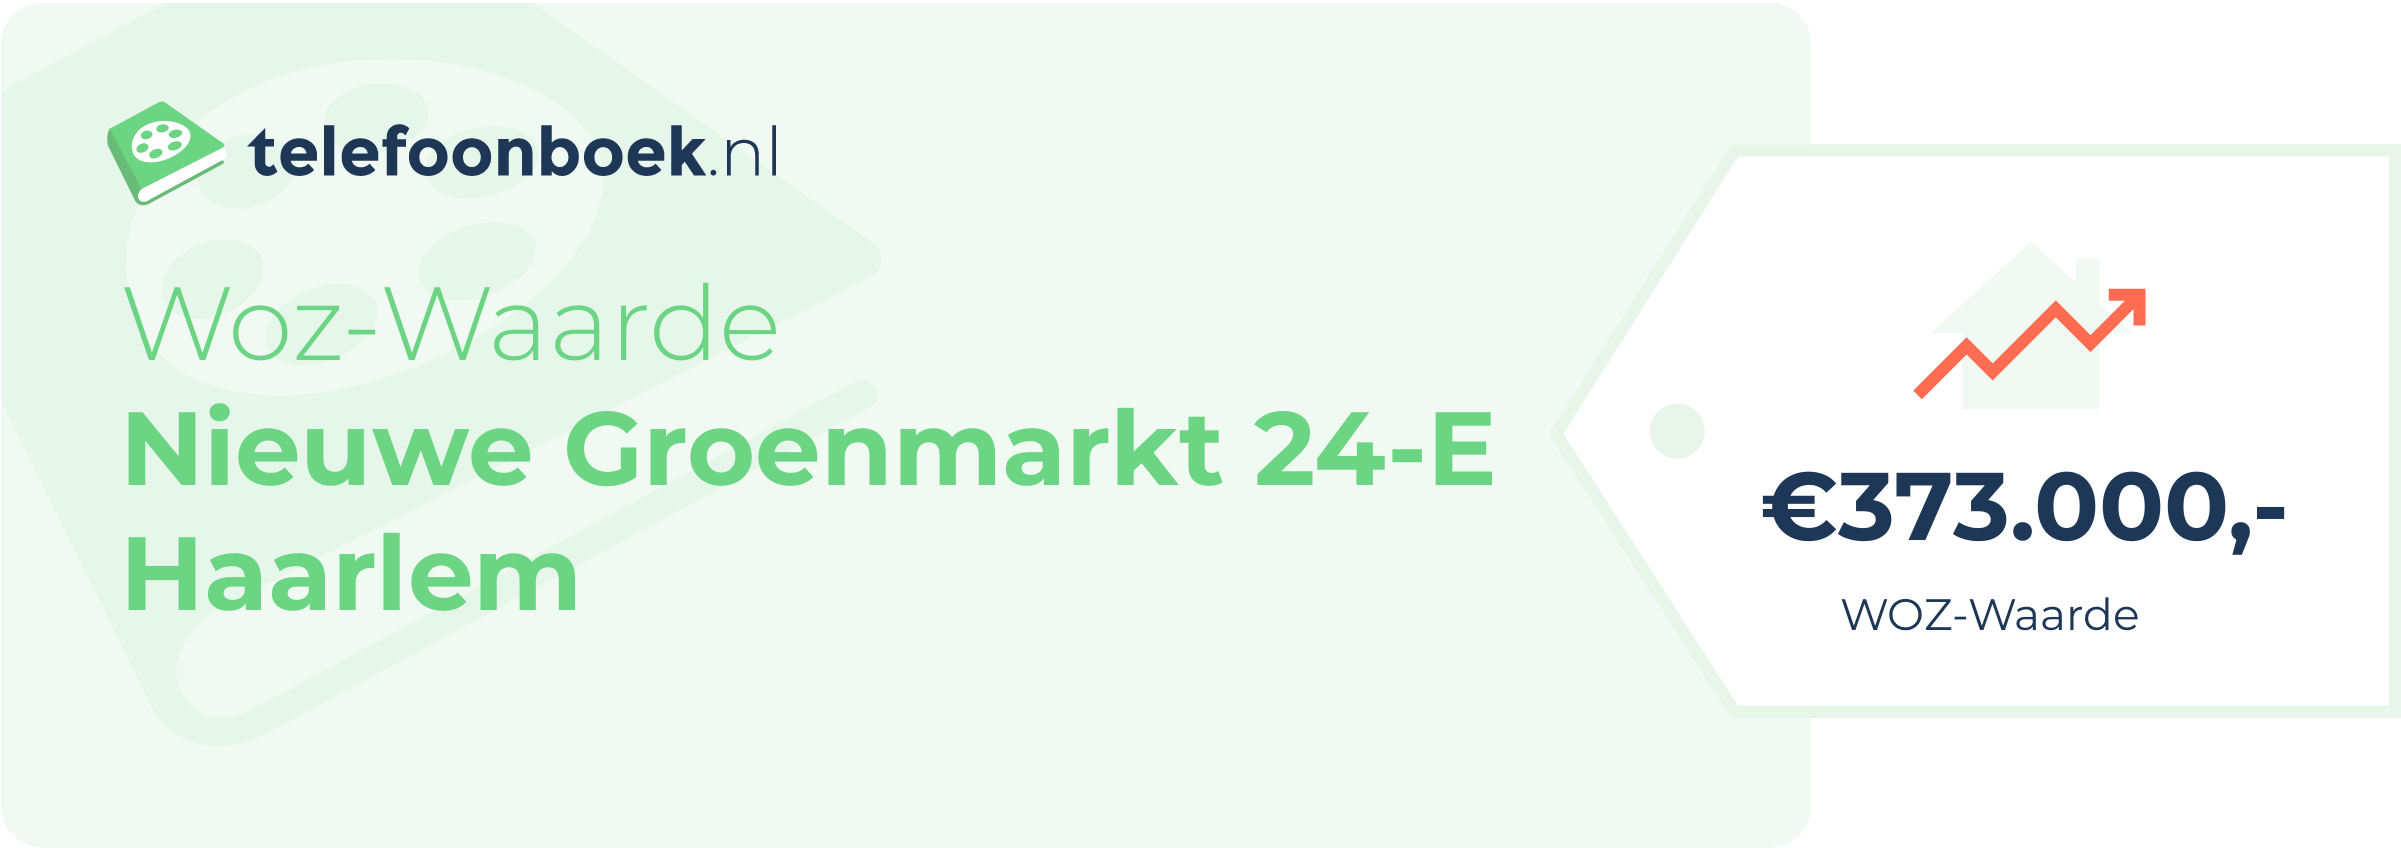 WOZ-waarde Nieuwe Groenmarkt 24-E Haarlem